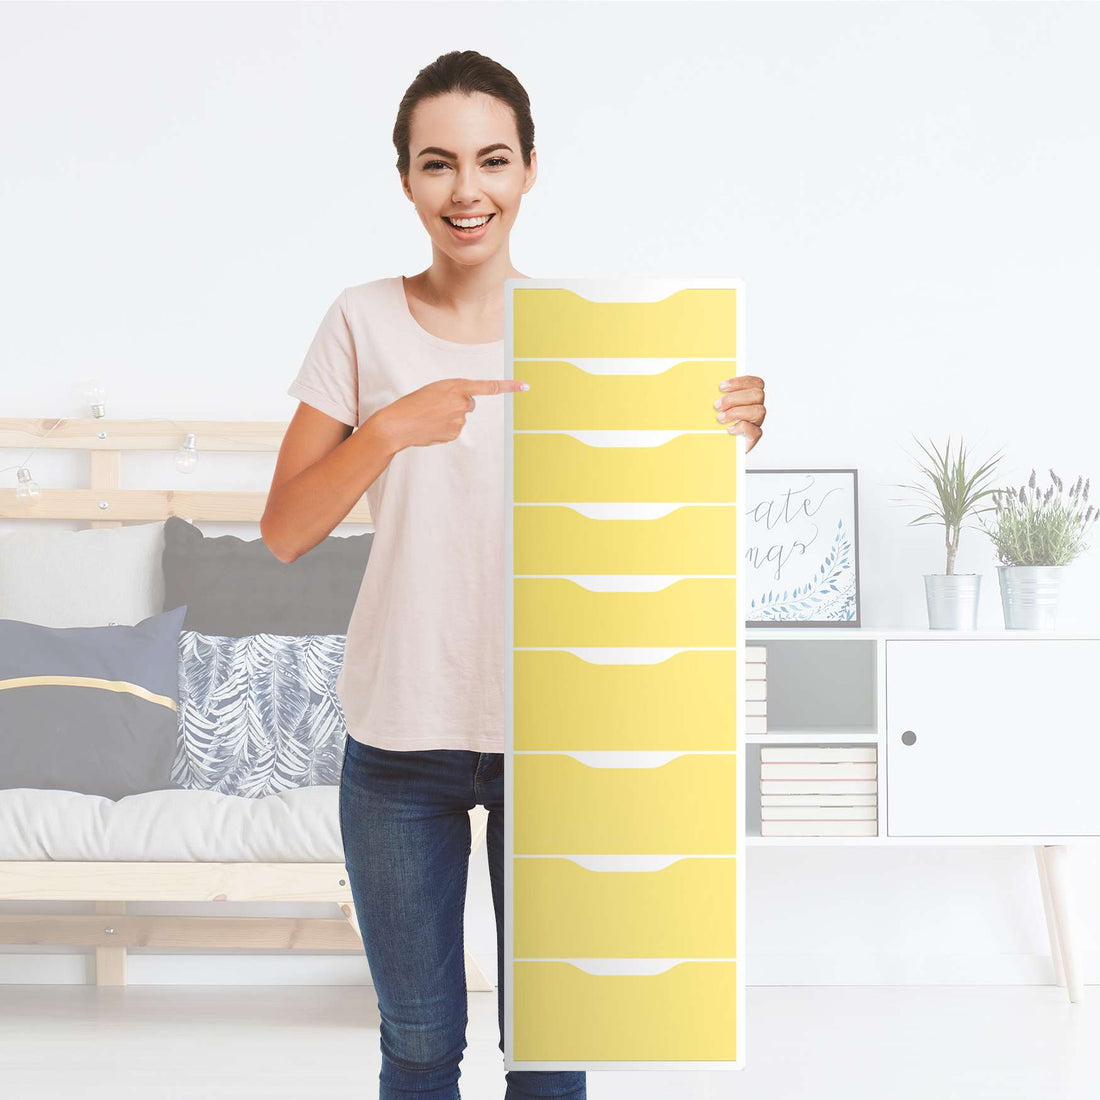 Folie für Möbel Gelb Light - IKEA Alex 9 Schubladen - Folie